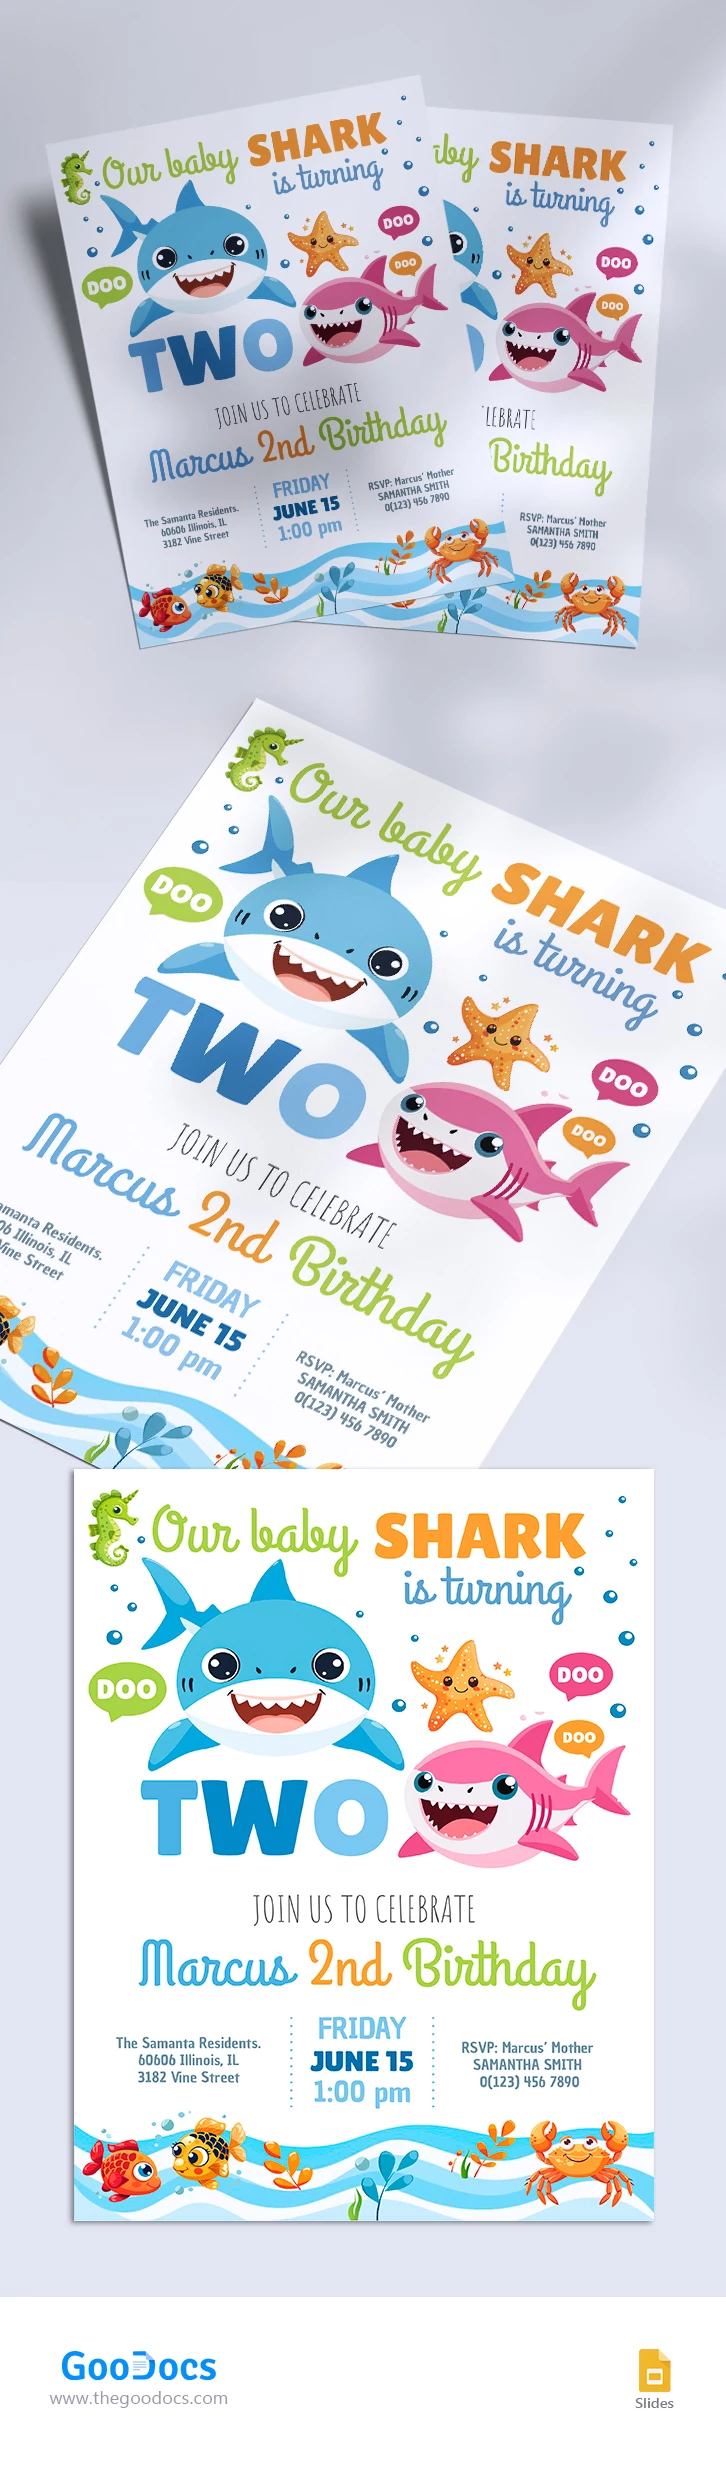 Invito Baby Shark - free Google Docs Template - 10068413